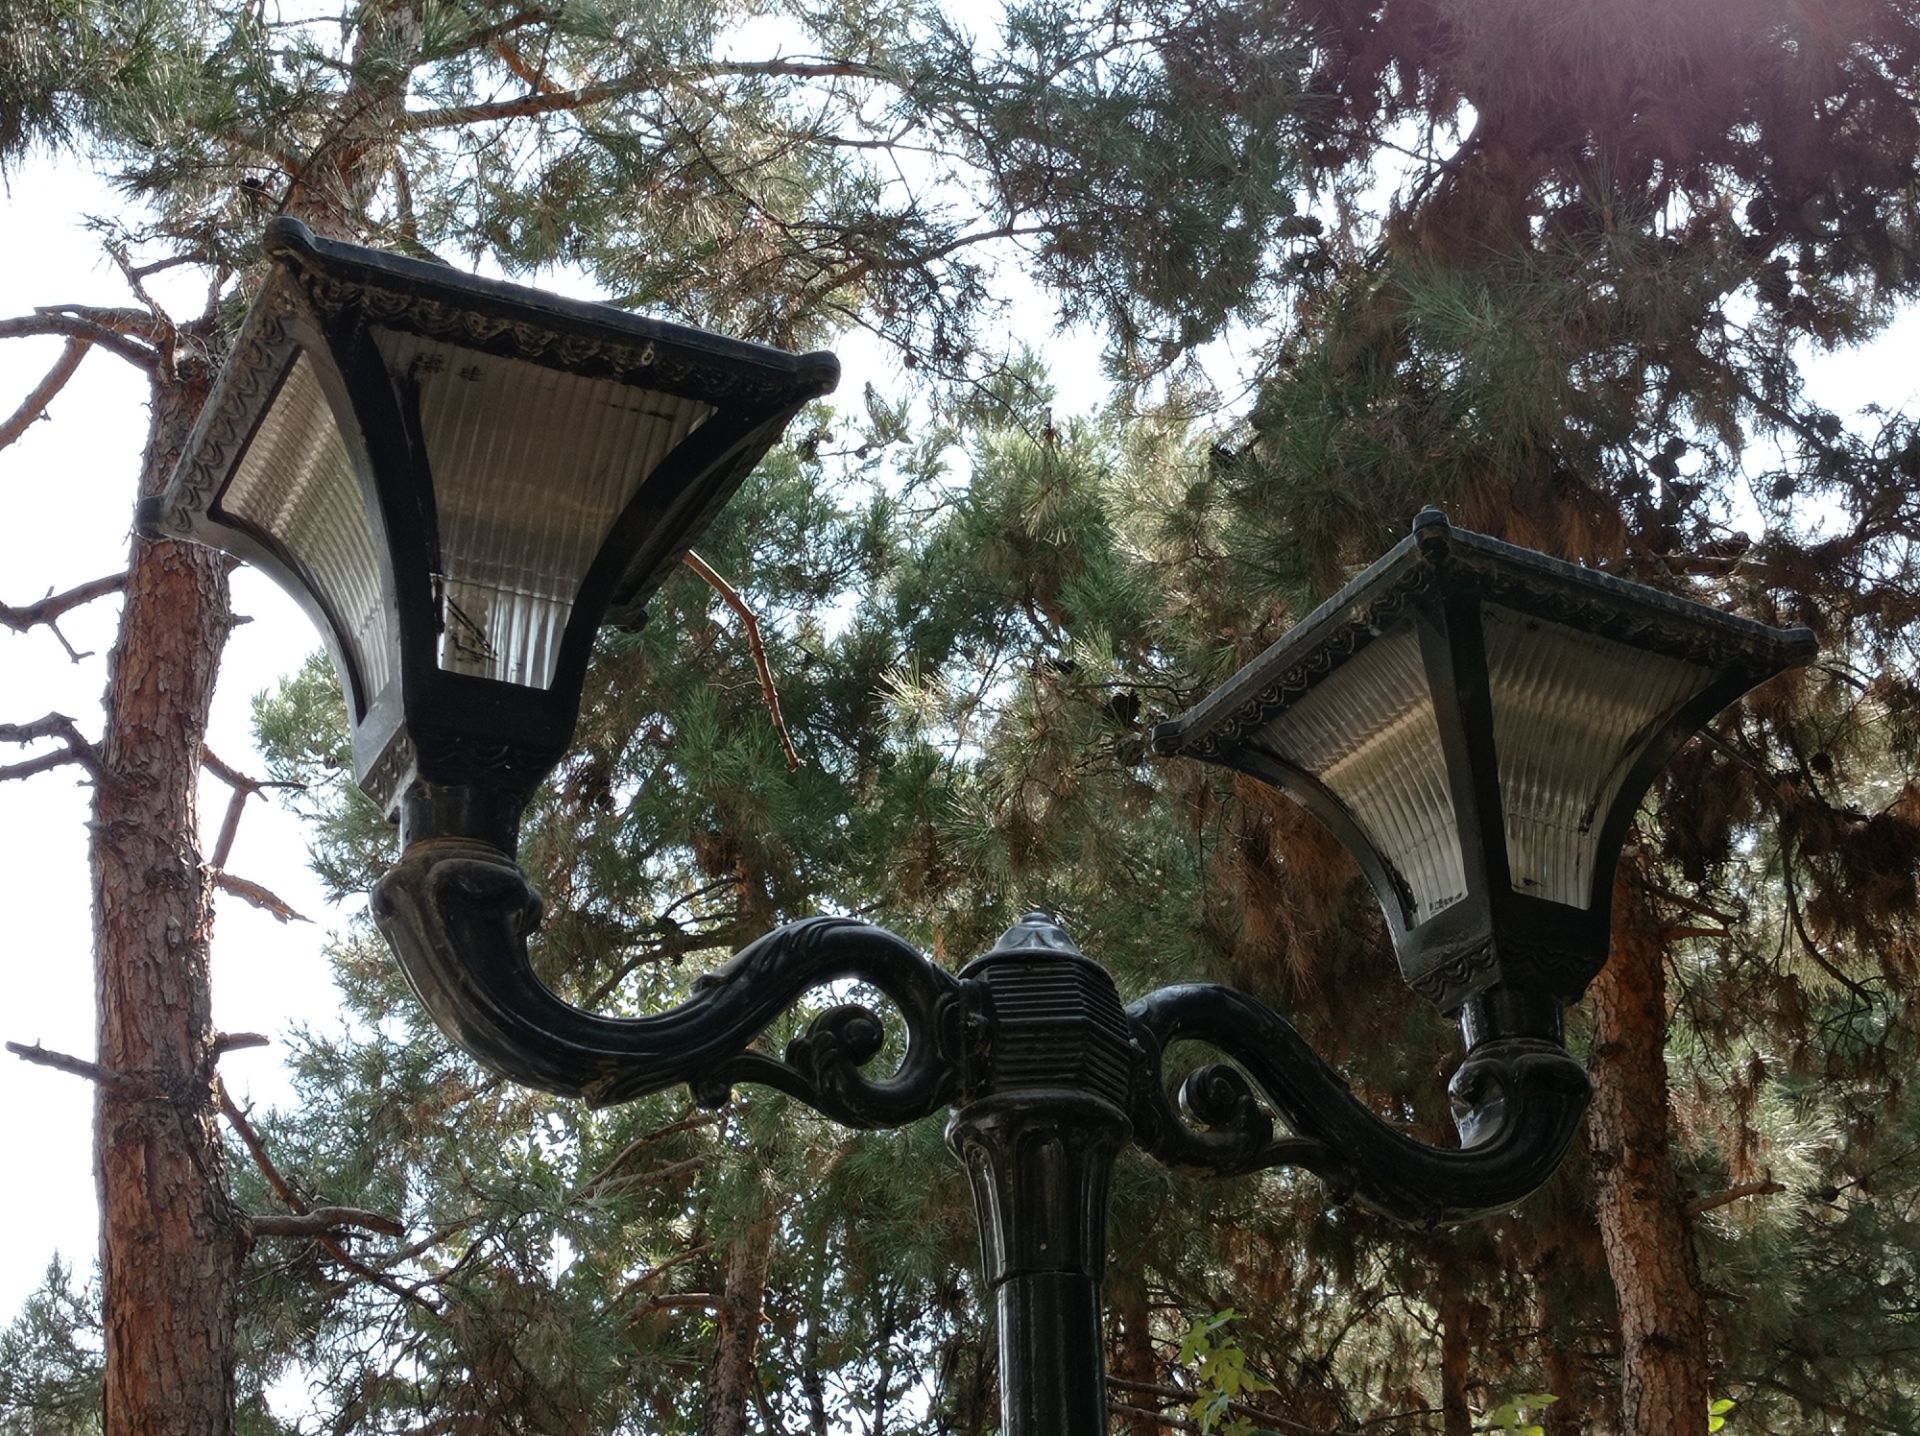 نمونه عکس 2x دوربین اصلی ردمی نوت ۹ در روشنایی - چراغی در پارک صبا جردن